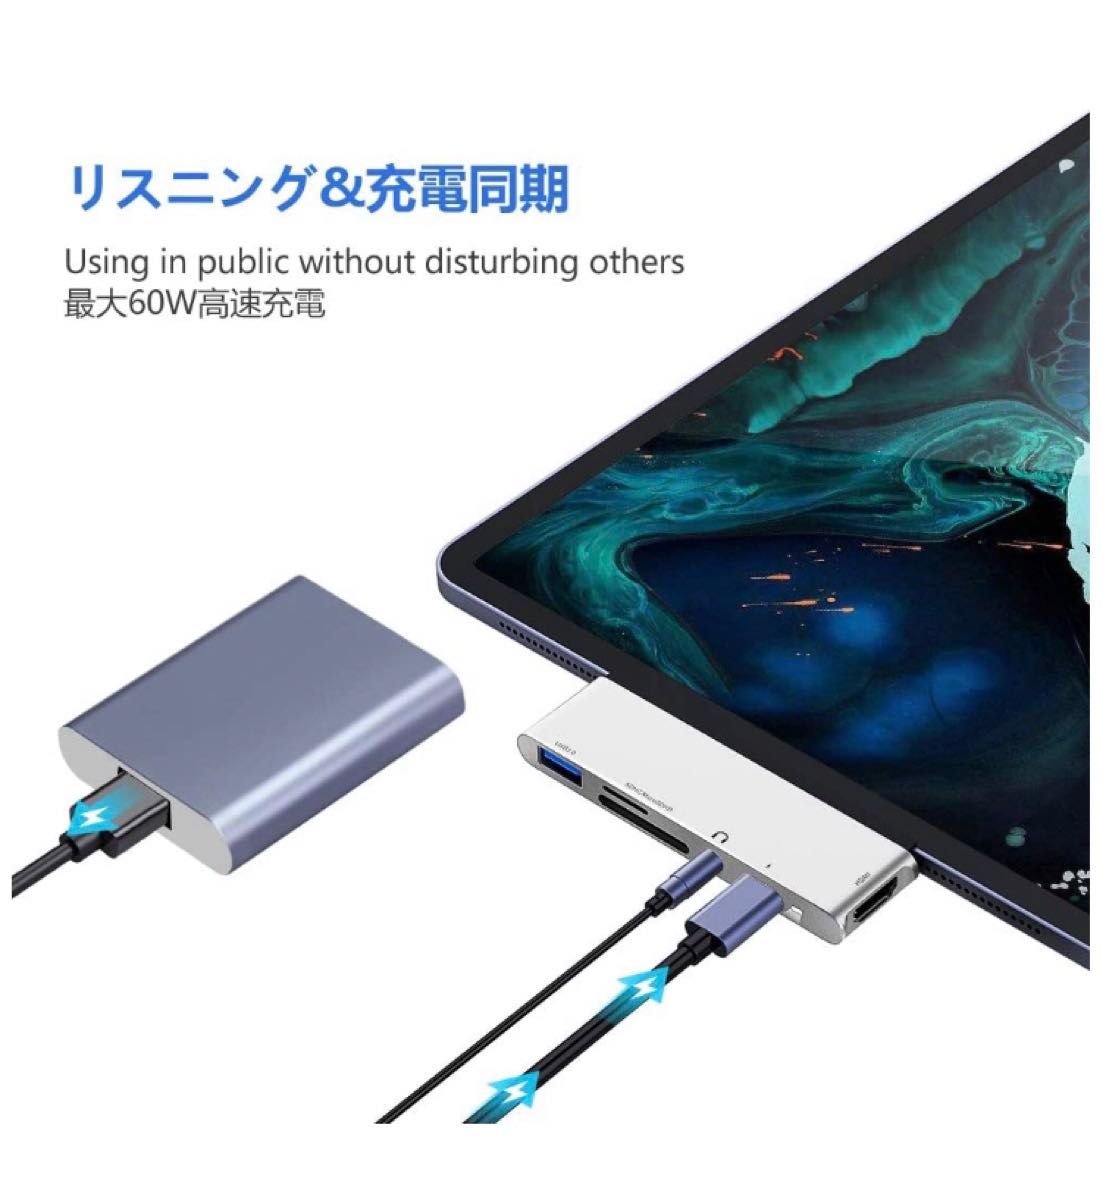 USB C ハブ6in1 Type-c hub iPad Pro対応 PD充電/4K HDMI 変換アダプタ SD/microSD